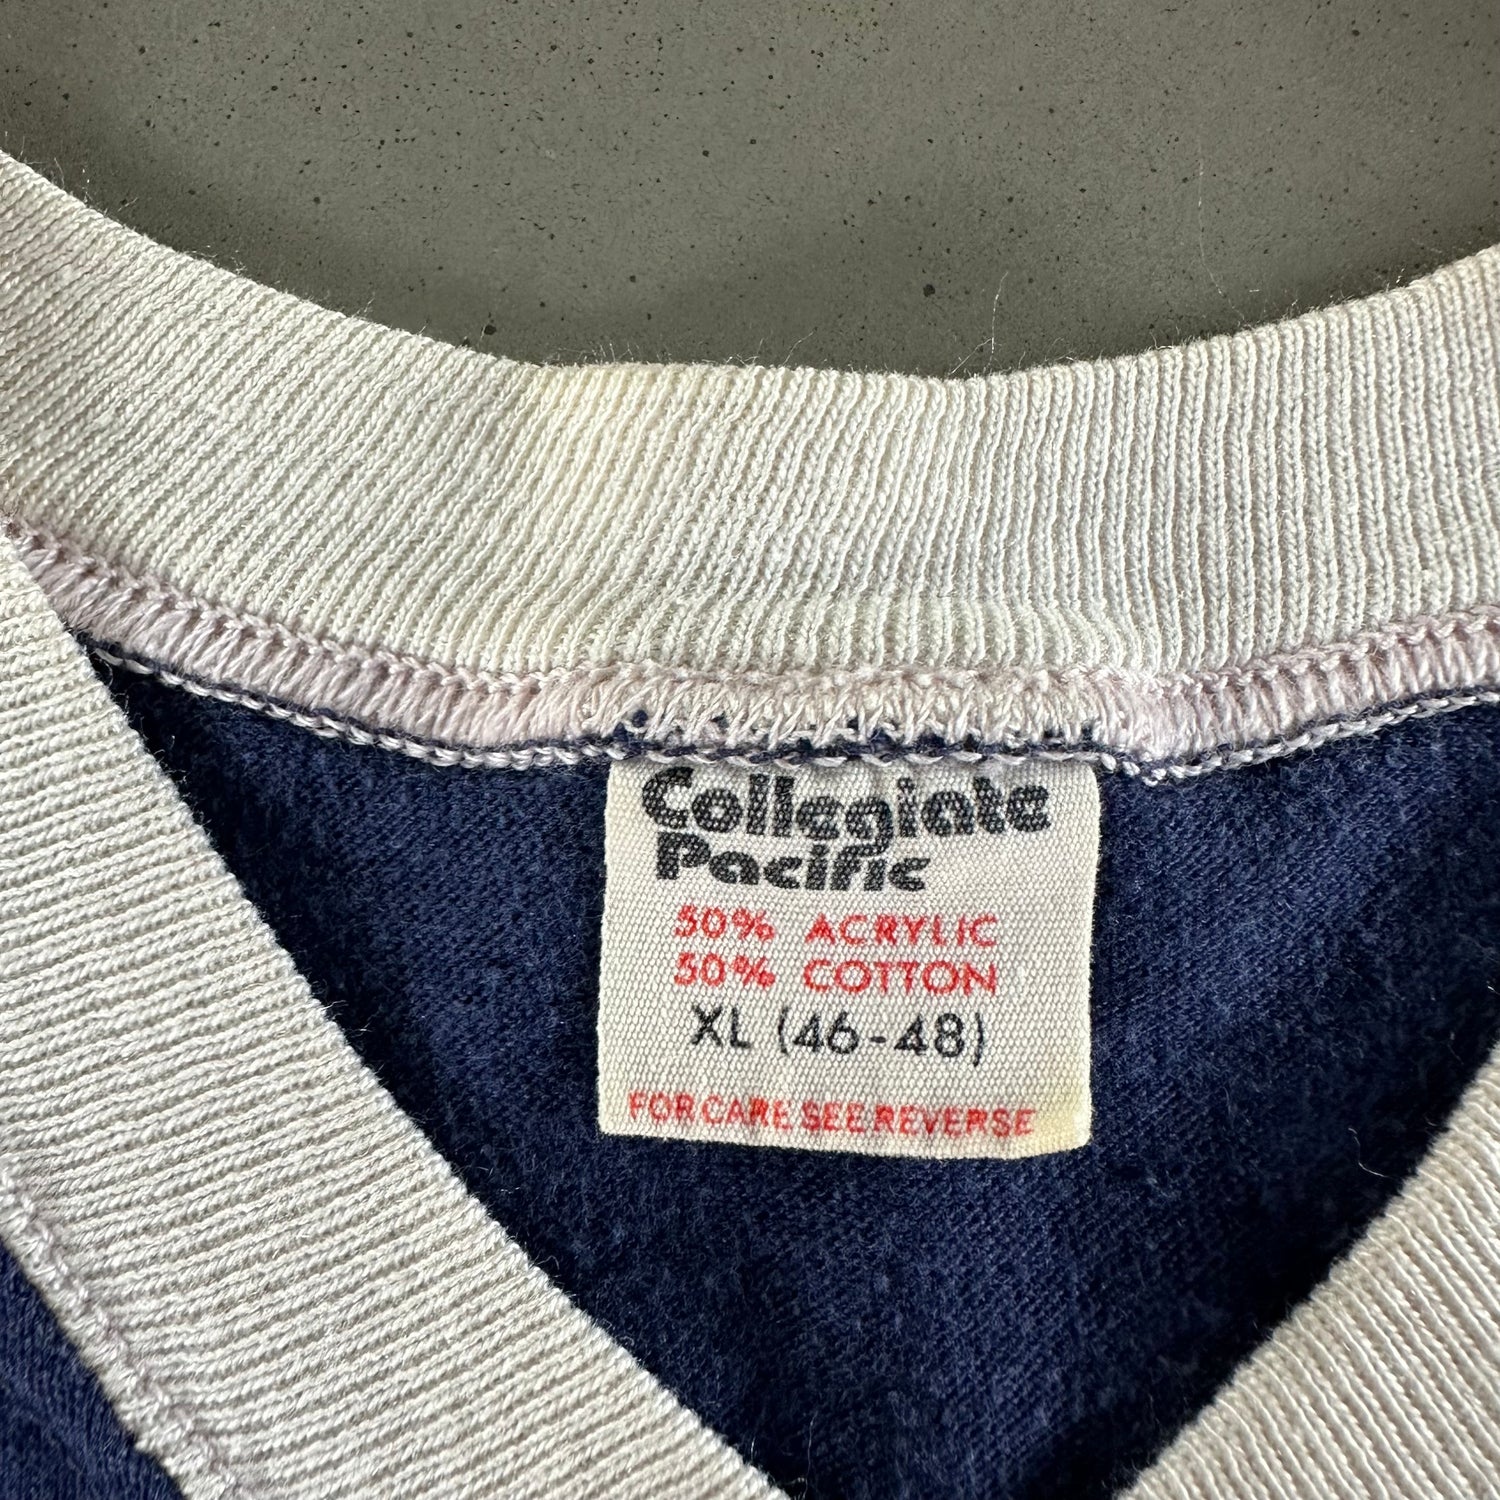 Vintage 1980s Penn State University T-shirt size XL